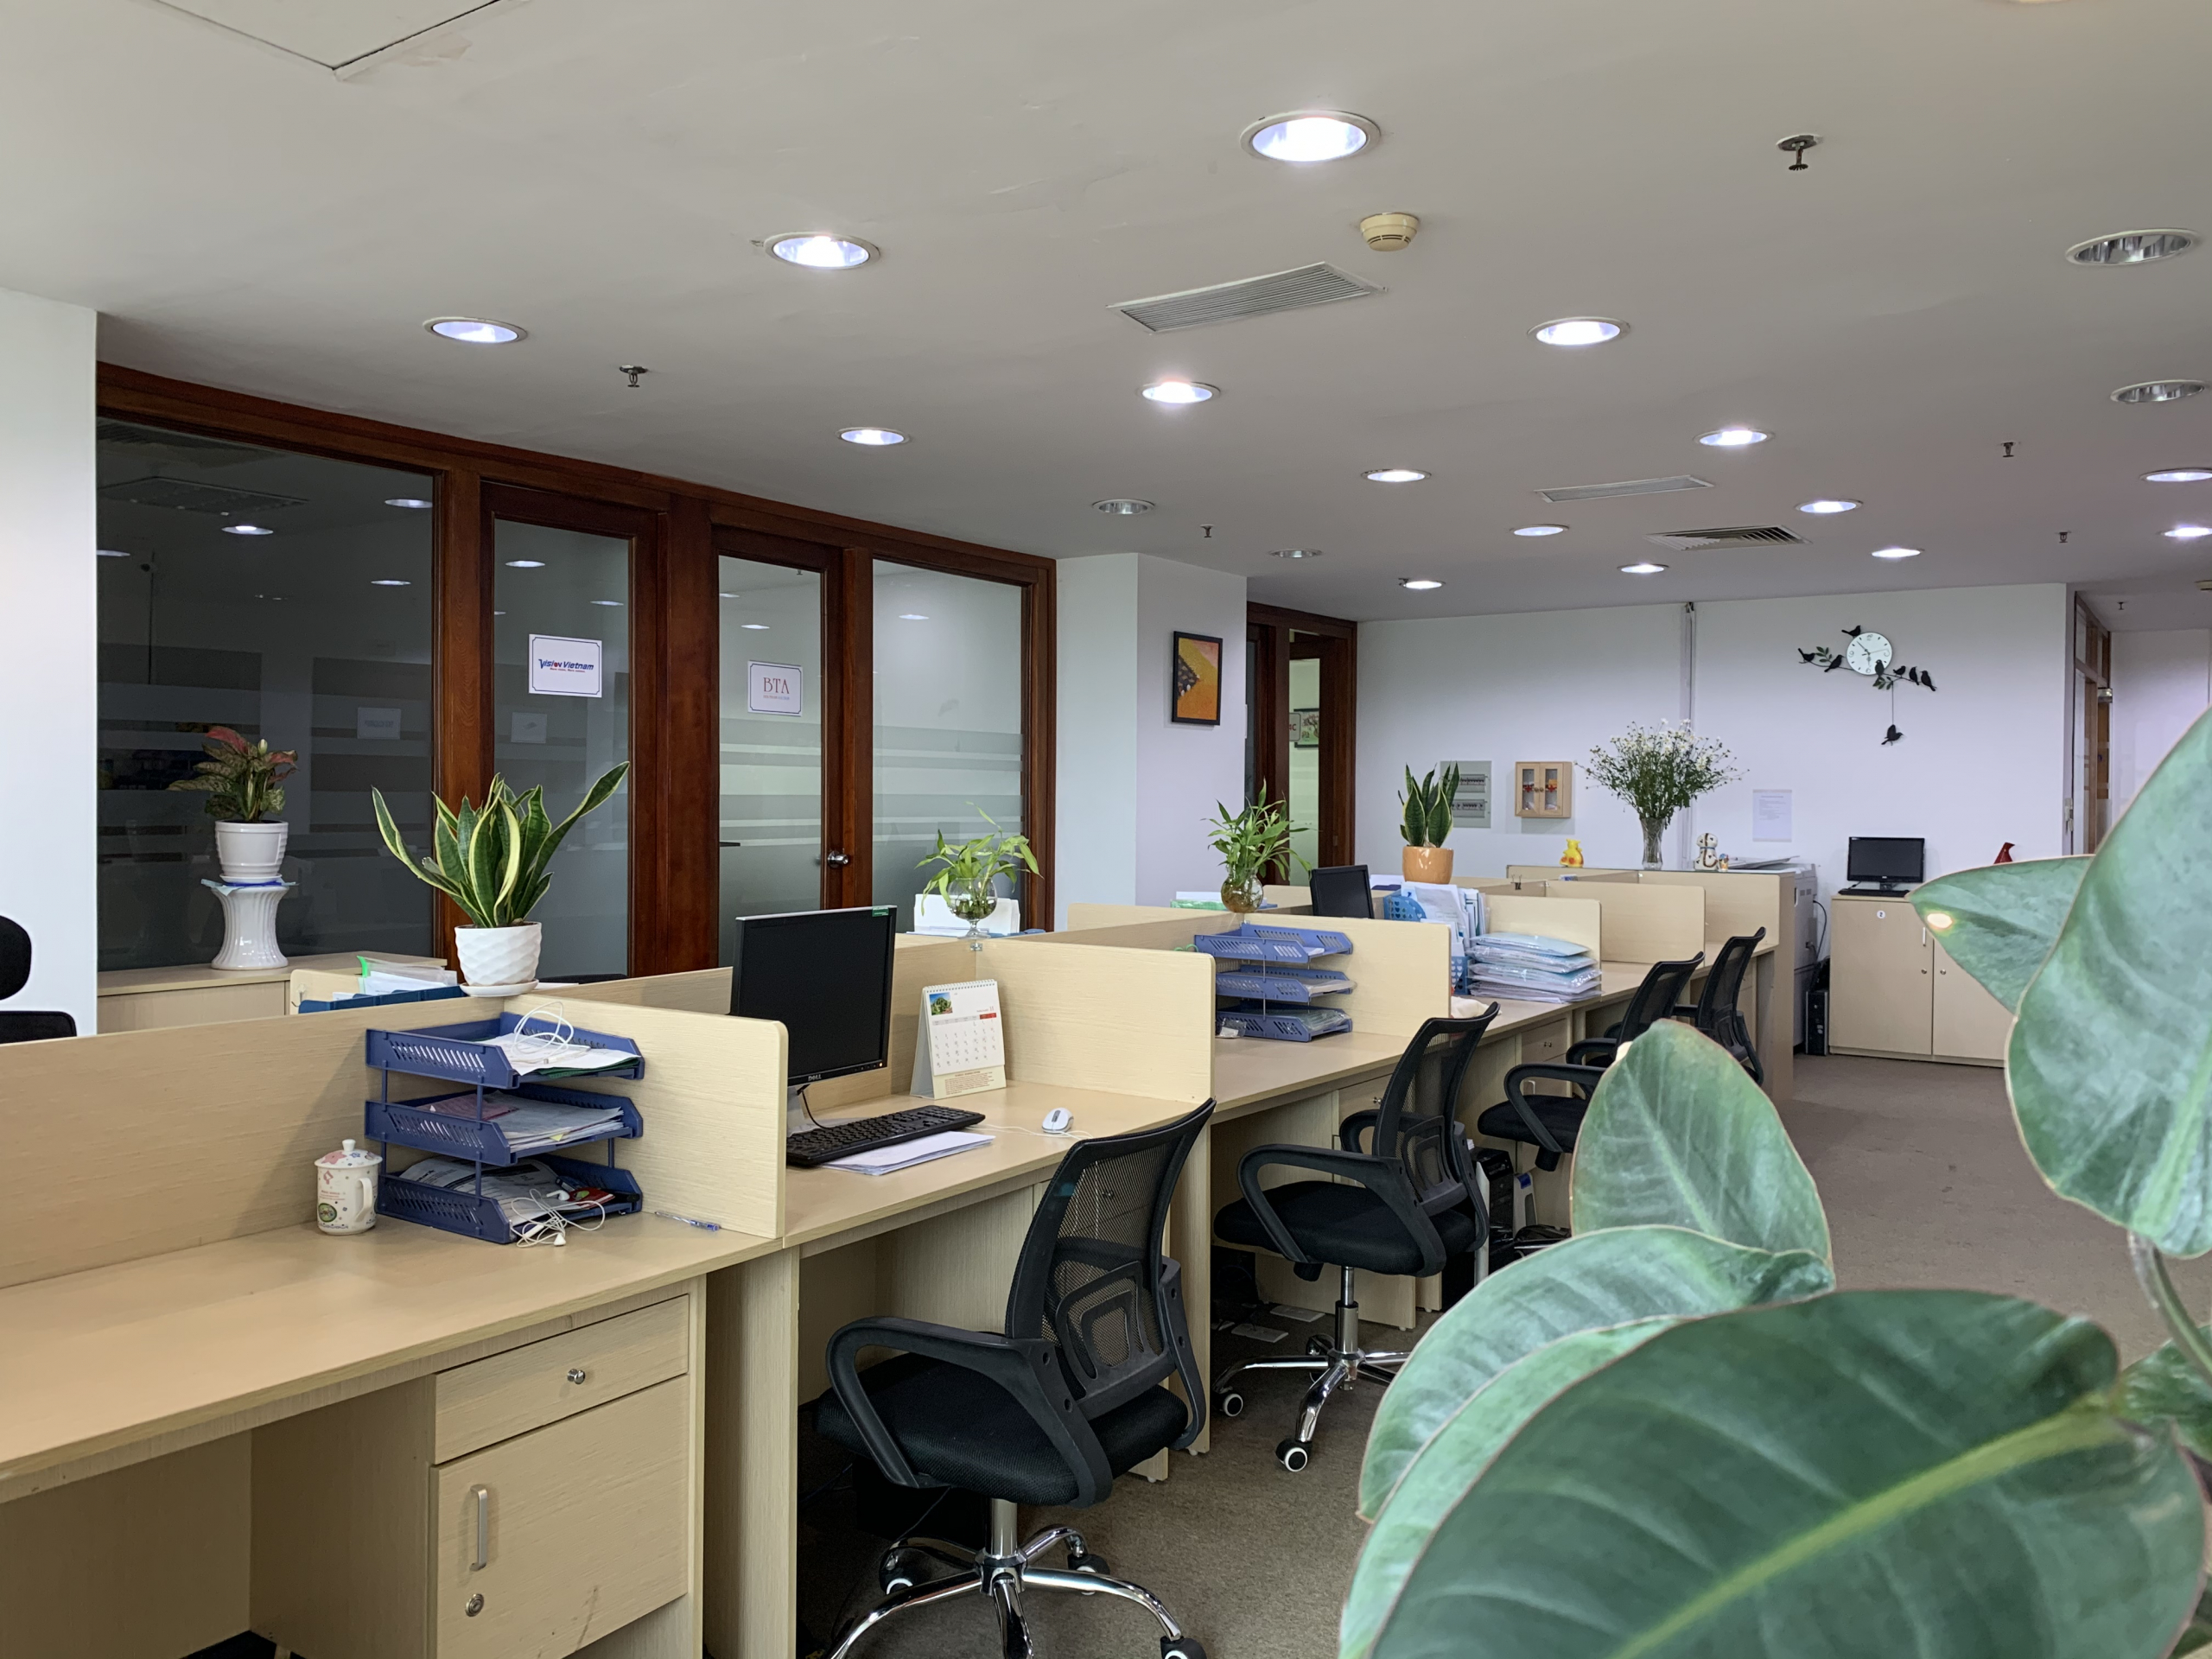 Chỗ ngồi làm việc trong văn phòng chia sẻ vẫn đảm bảo không gian riêng tư cho từng khách hàng